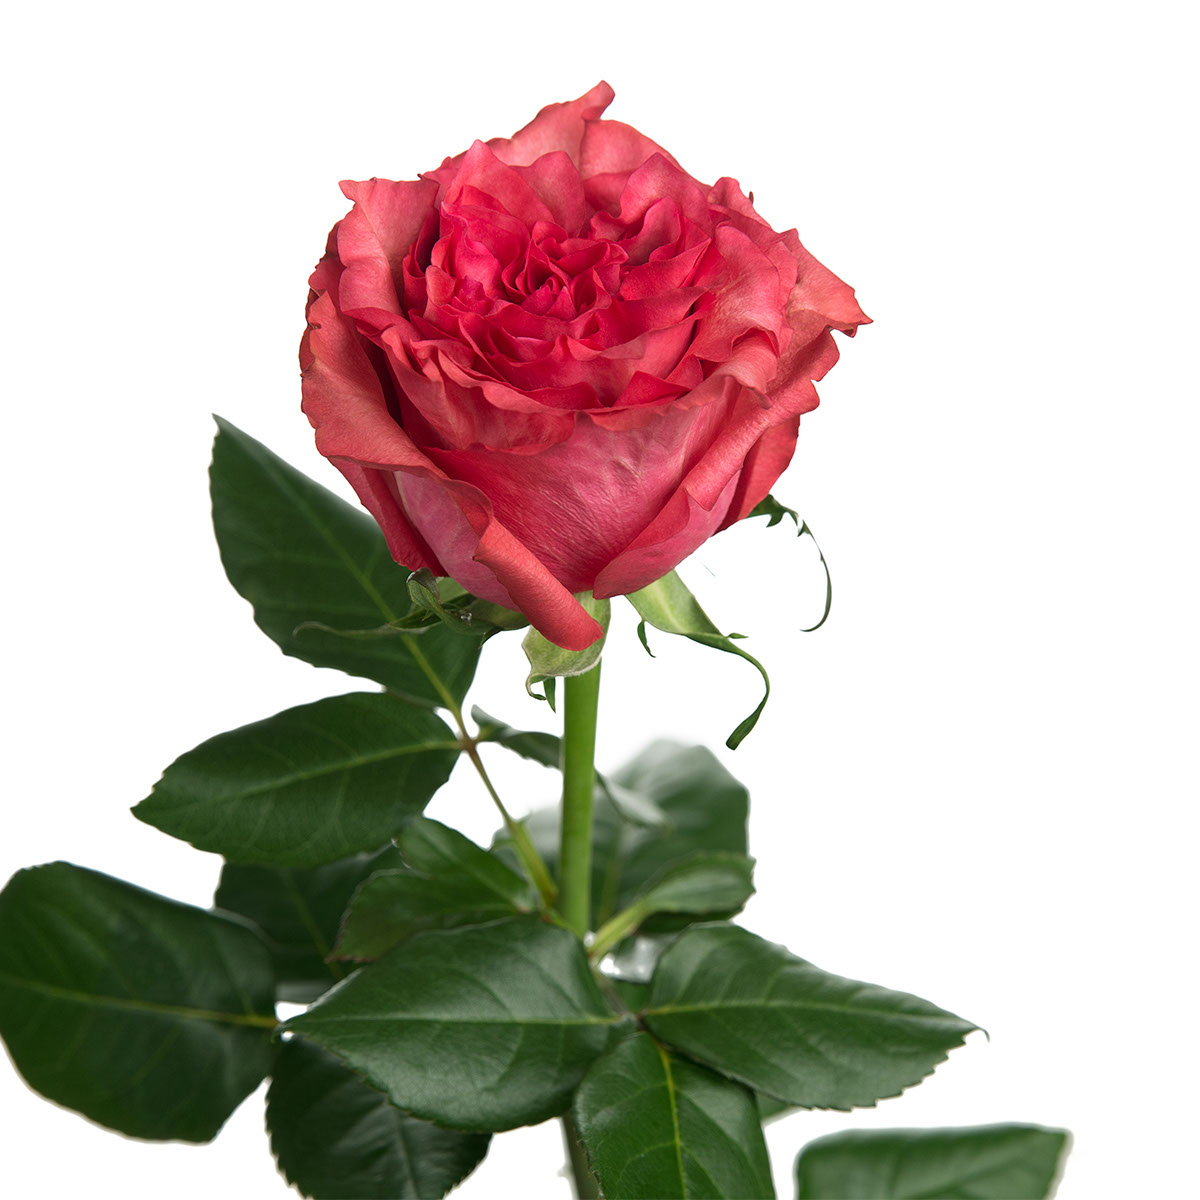 Caralinda Garden Rose